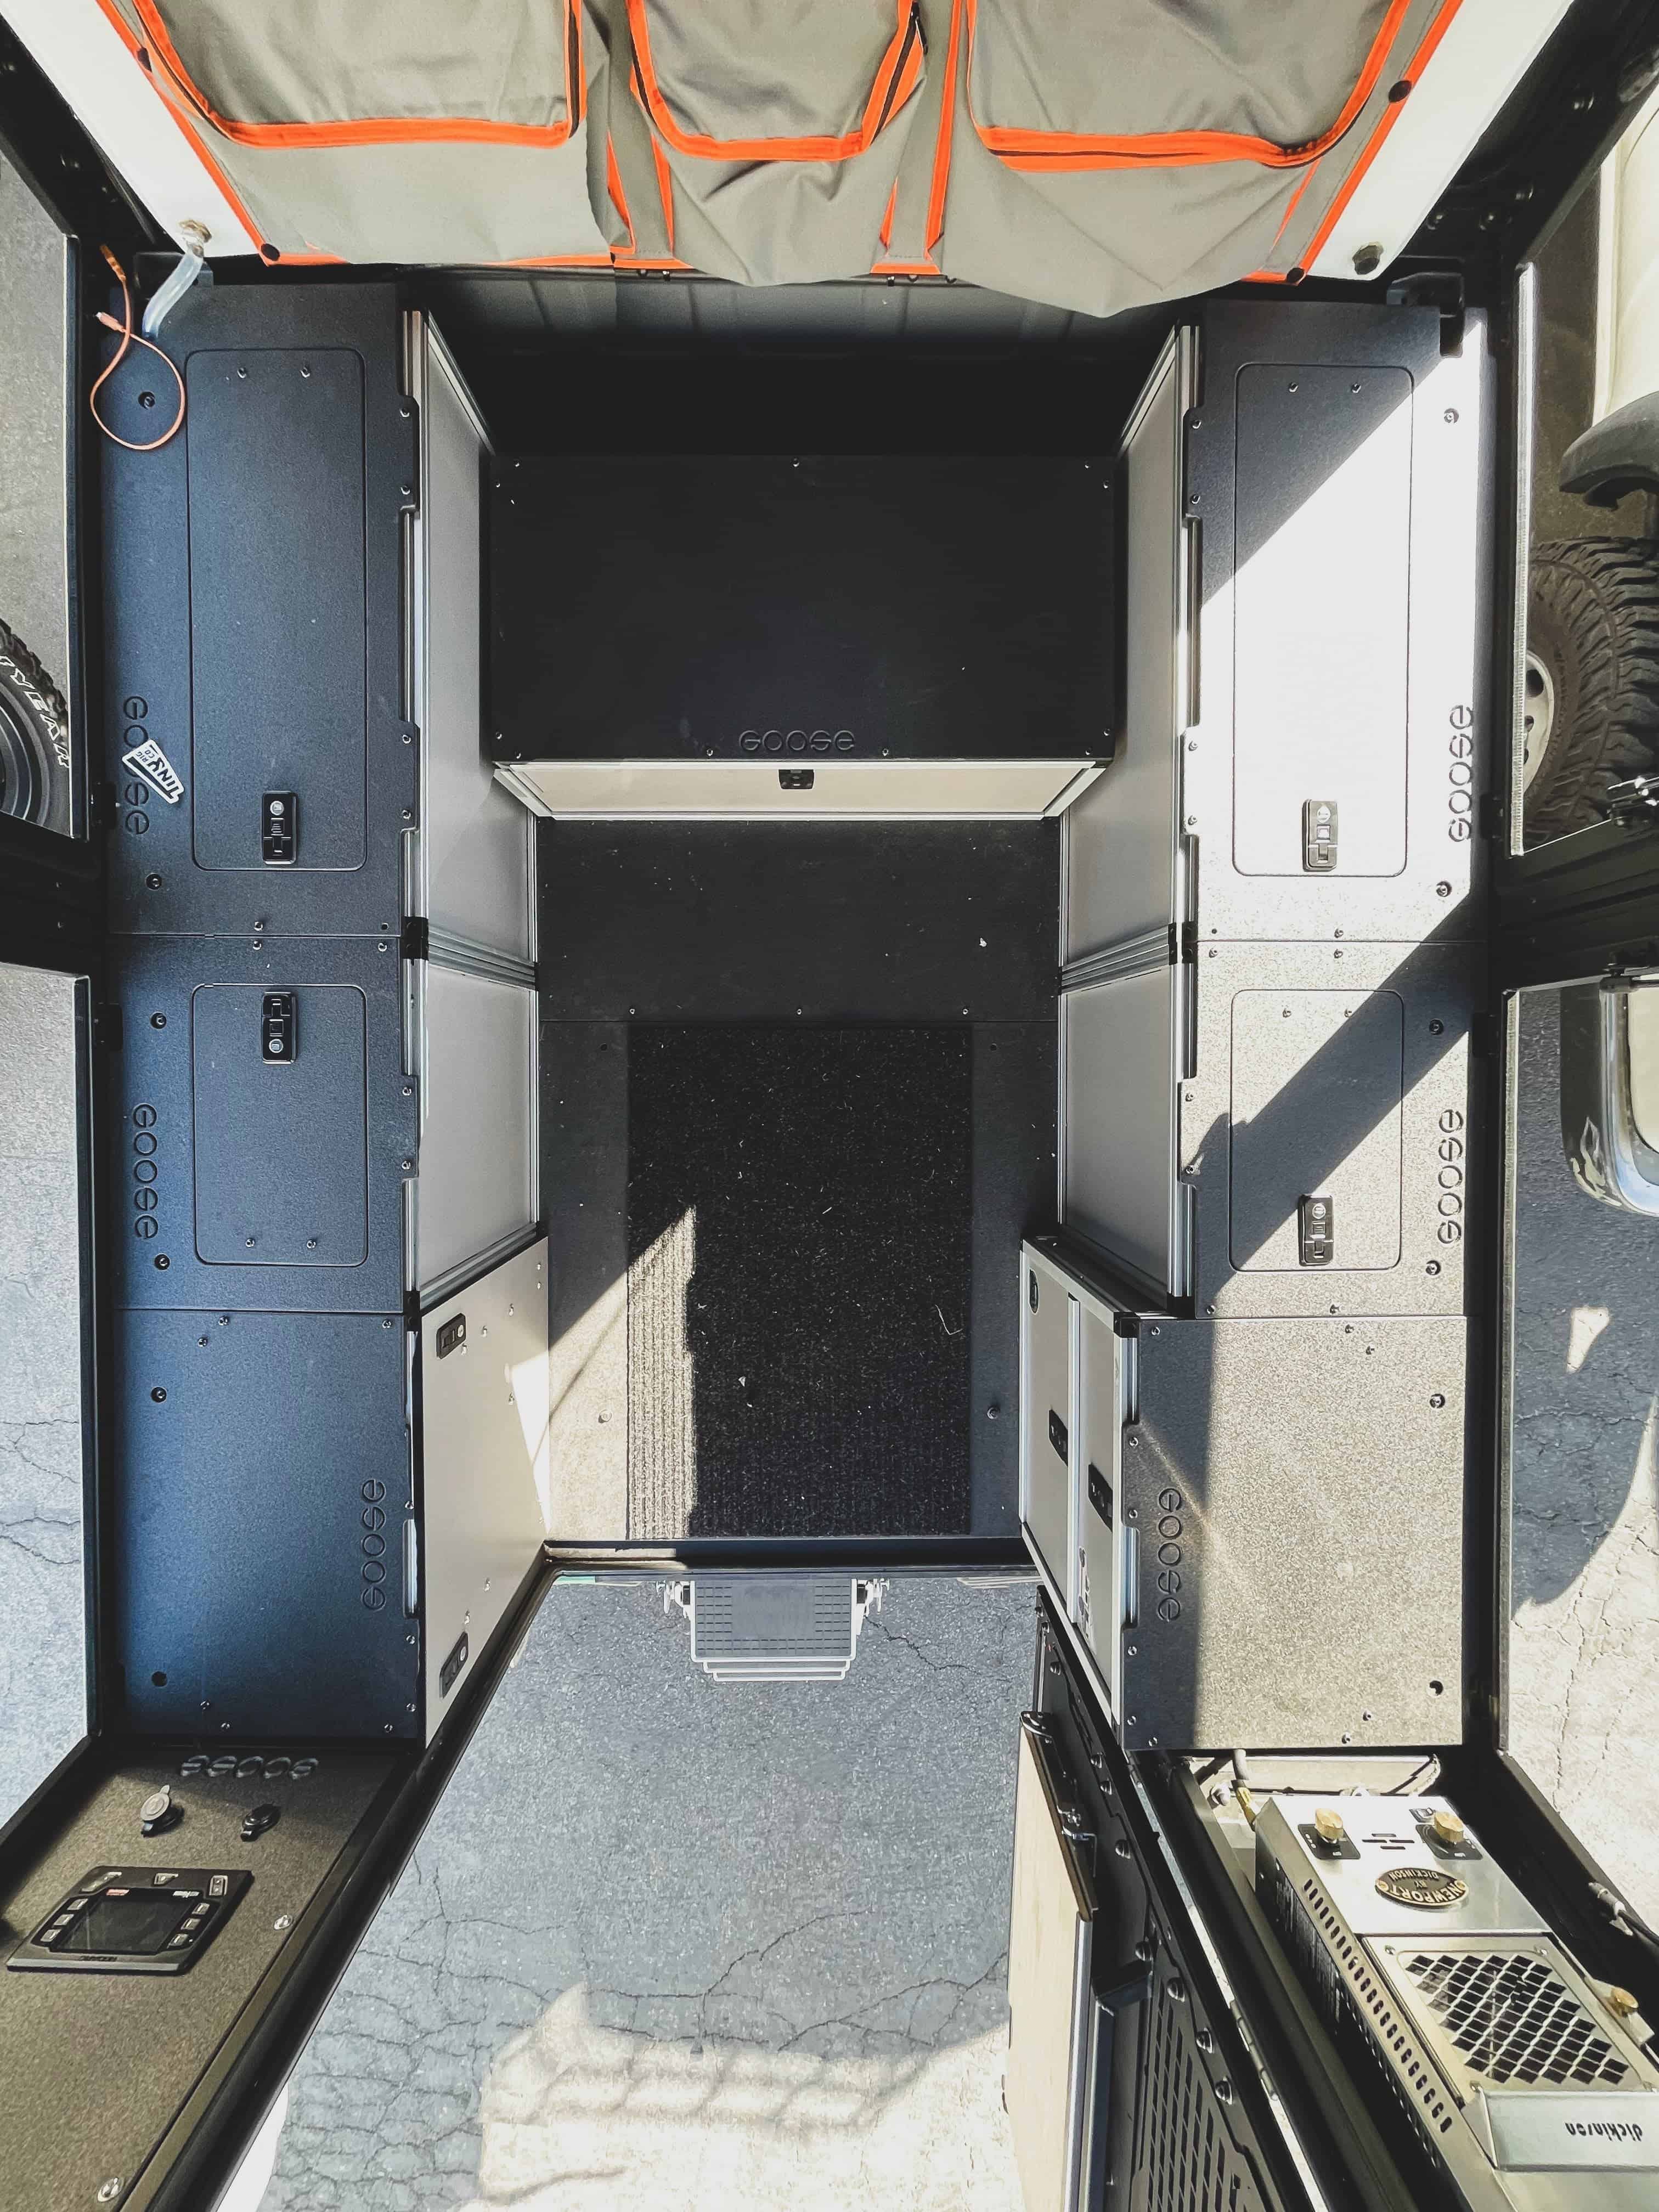 Alu-Cab Alu-Cabin Canopy Camper - Toyota Tundra 2022-Present 3rd Gen. - Middle Utility Module - 6'5" Bed